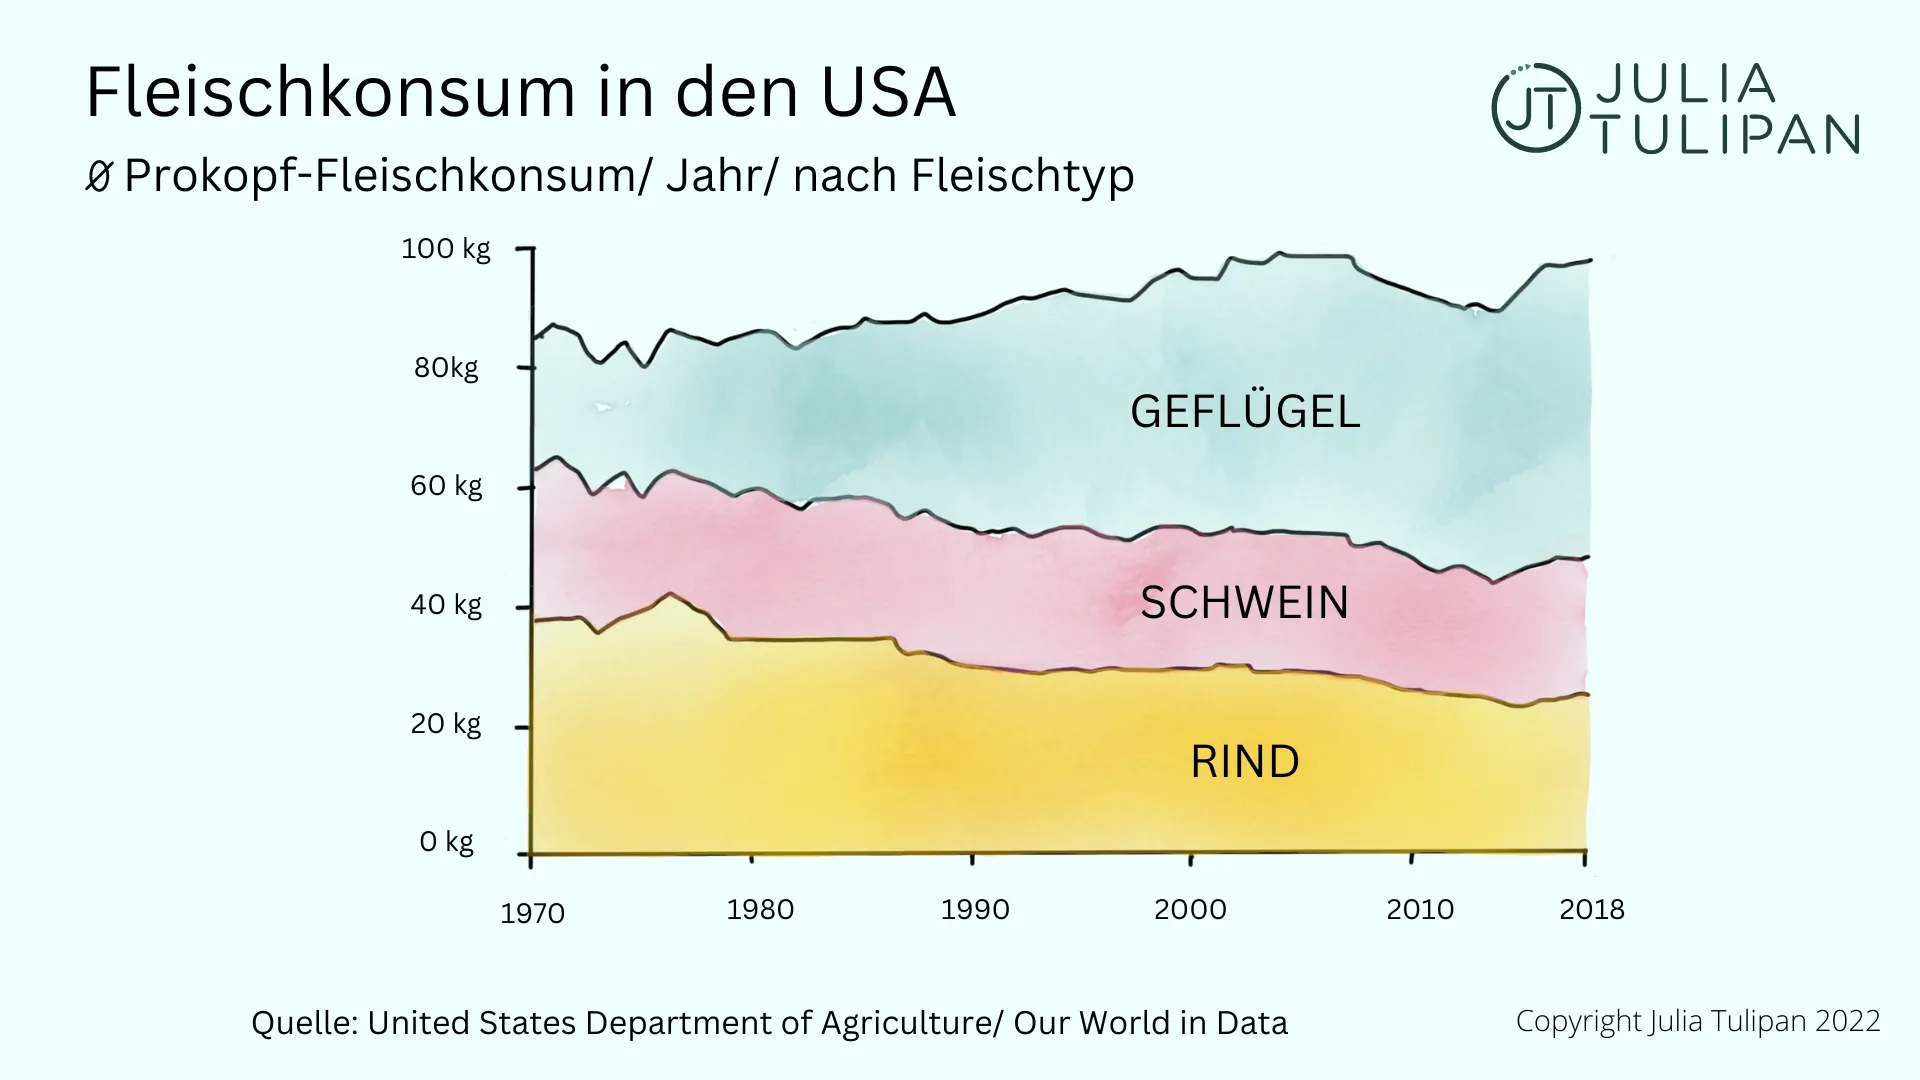 Fleischkonsum in den USA 1970 - 2000